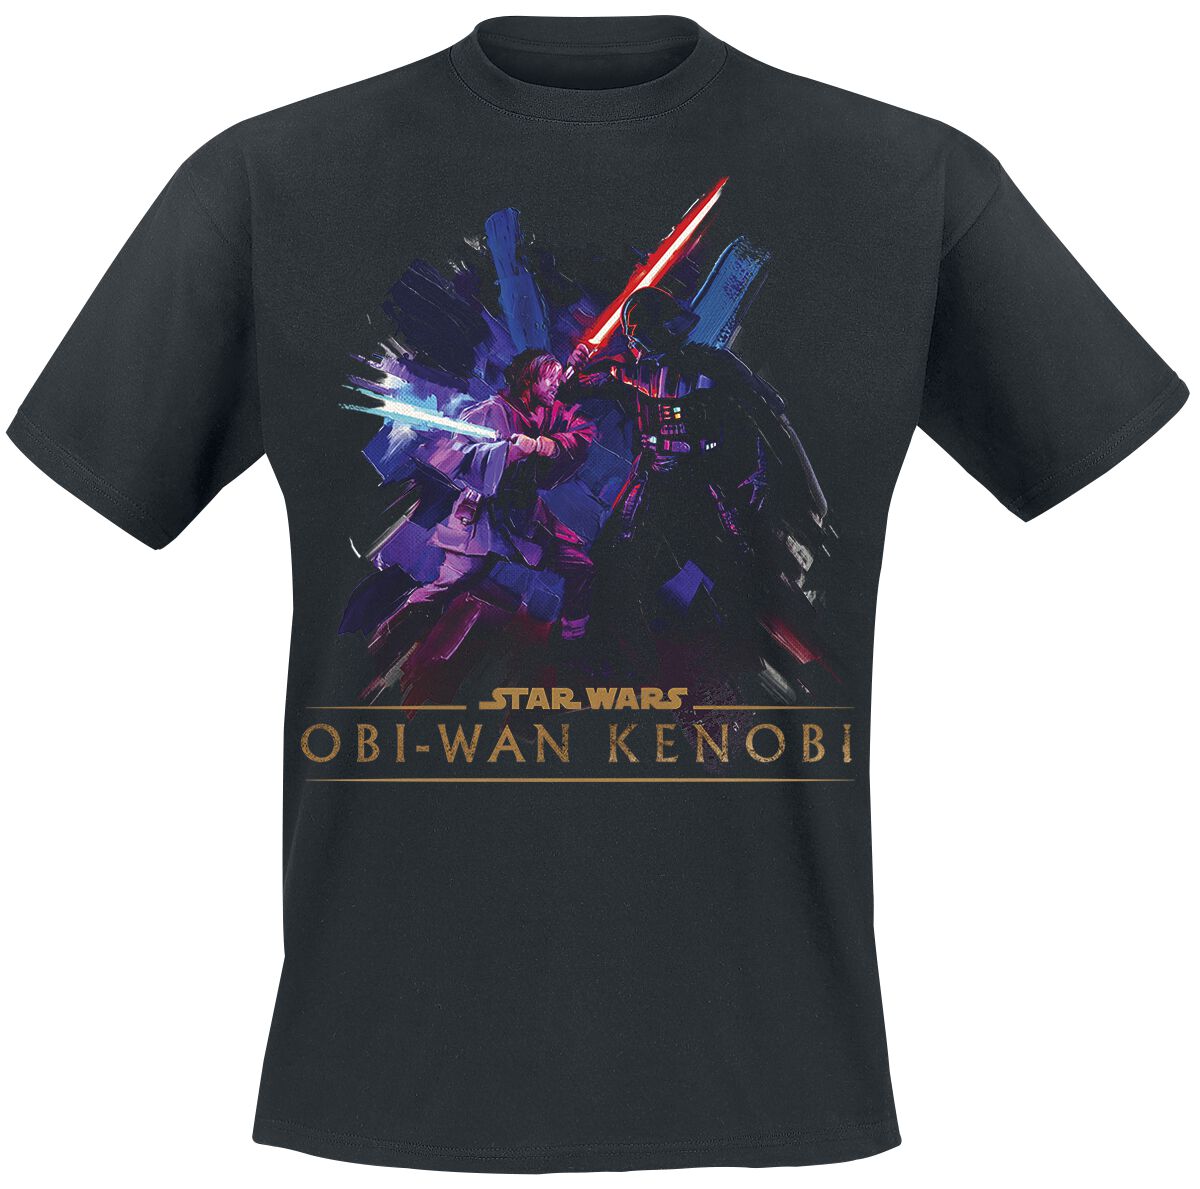 Star Wars T-Shirt - Obi-Wan Kenobi - Vintage - S bis XXL - für Männer - Größe XL - schwarz  - EMP exklusives Merchandise!